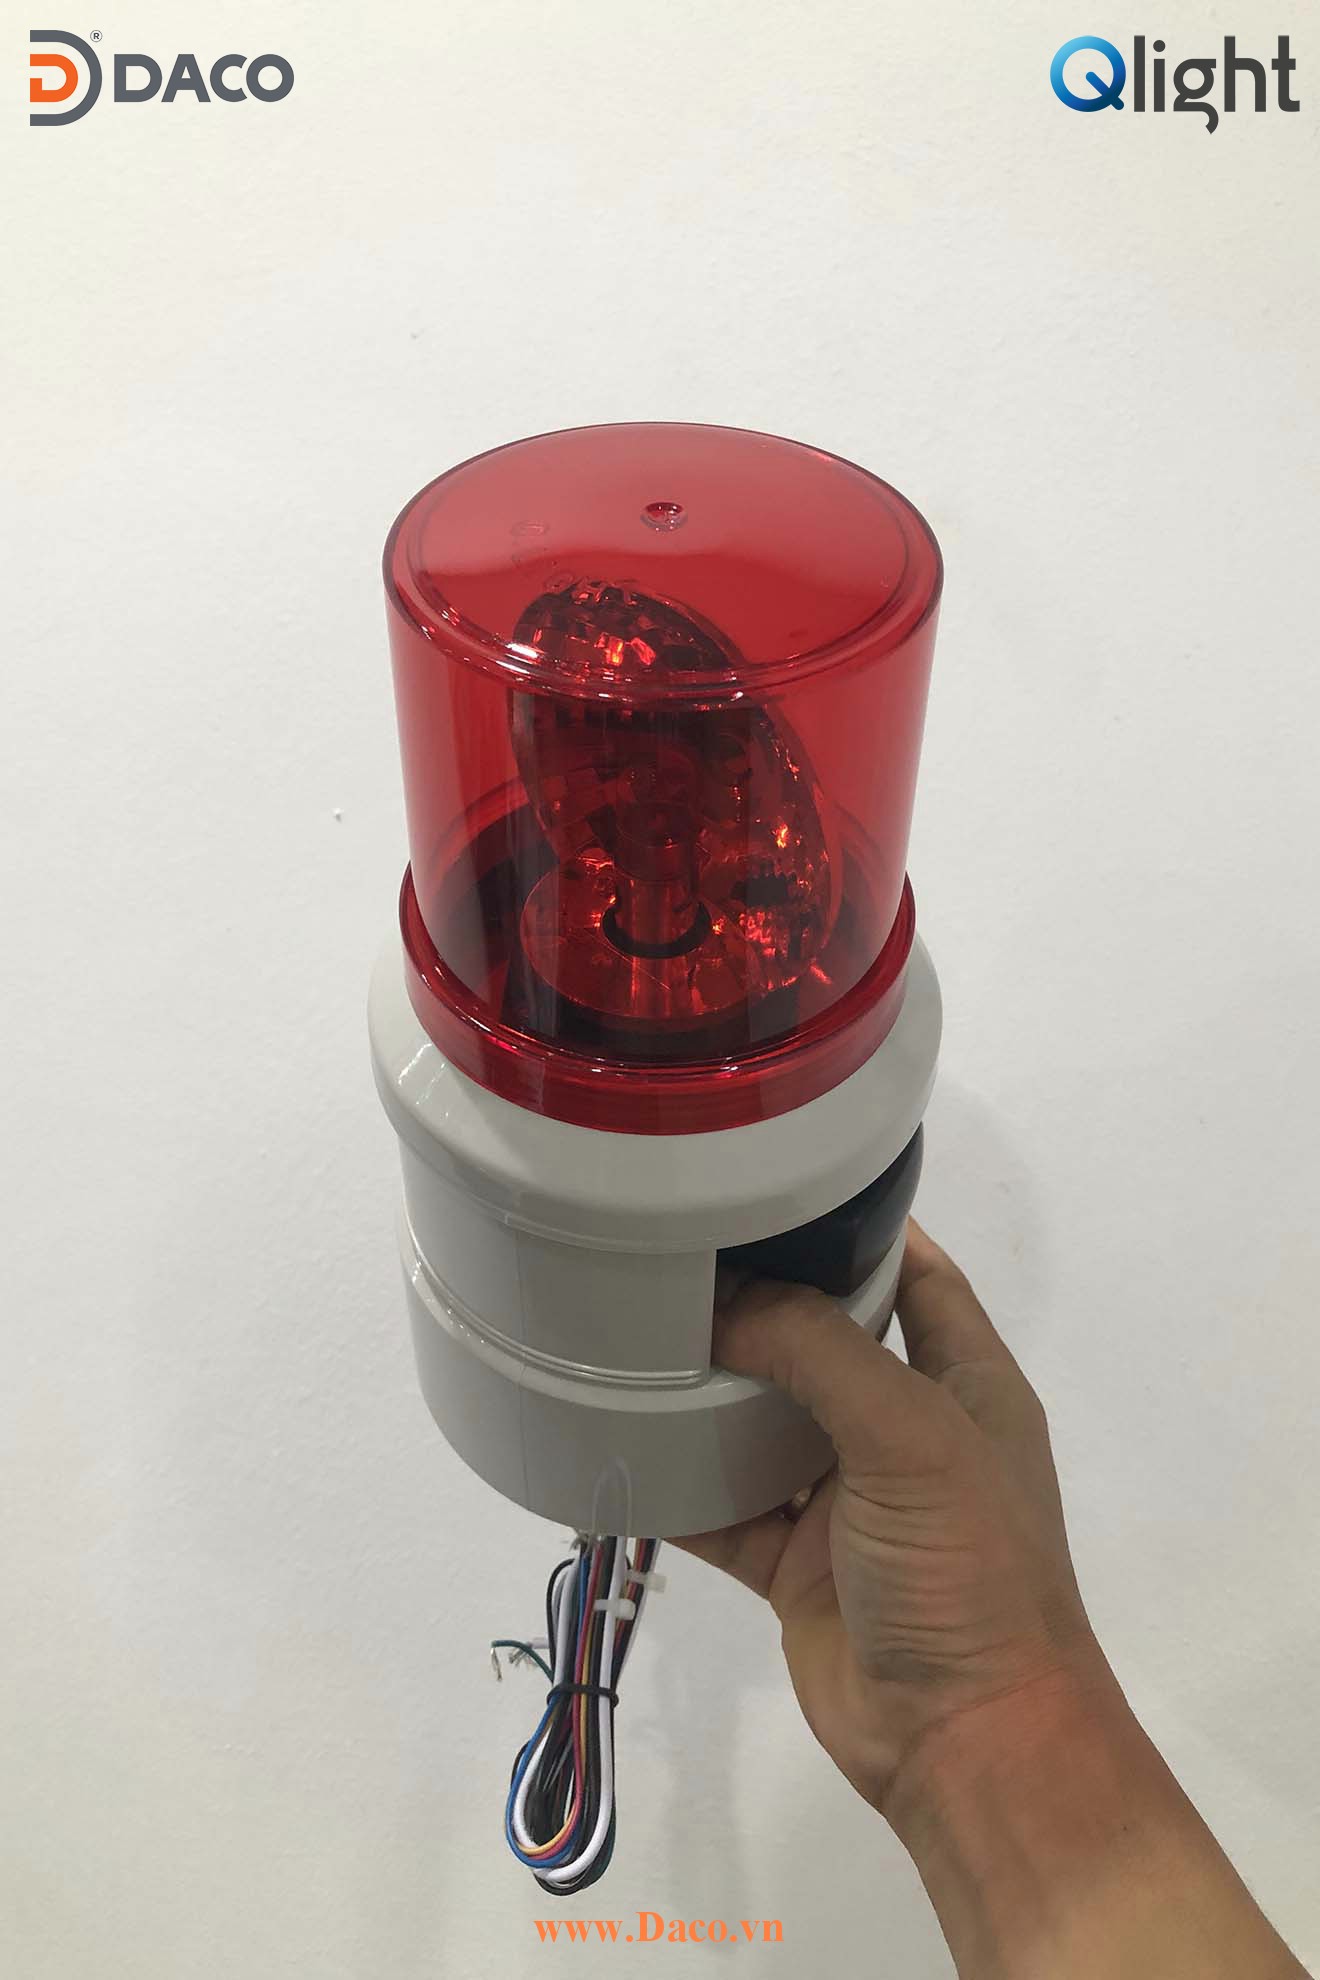 S100D-WA-110-R Hình ảnh thực tế Đèn báo hiệu có loa 5 âm báo Qlight Hàn Quốc Φ100: Điện áp 110VAC